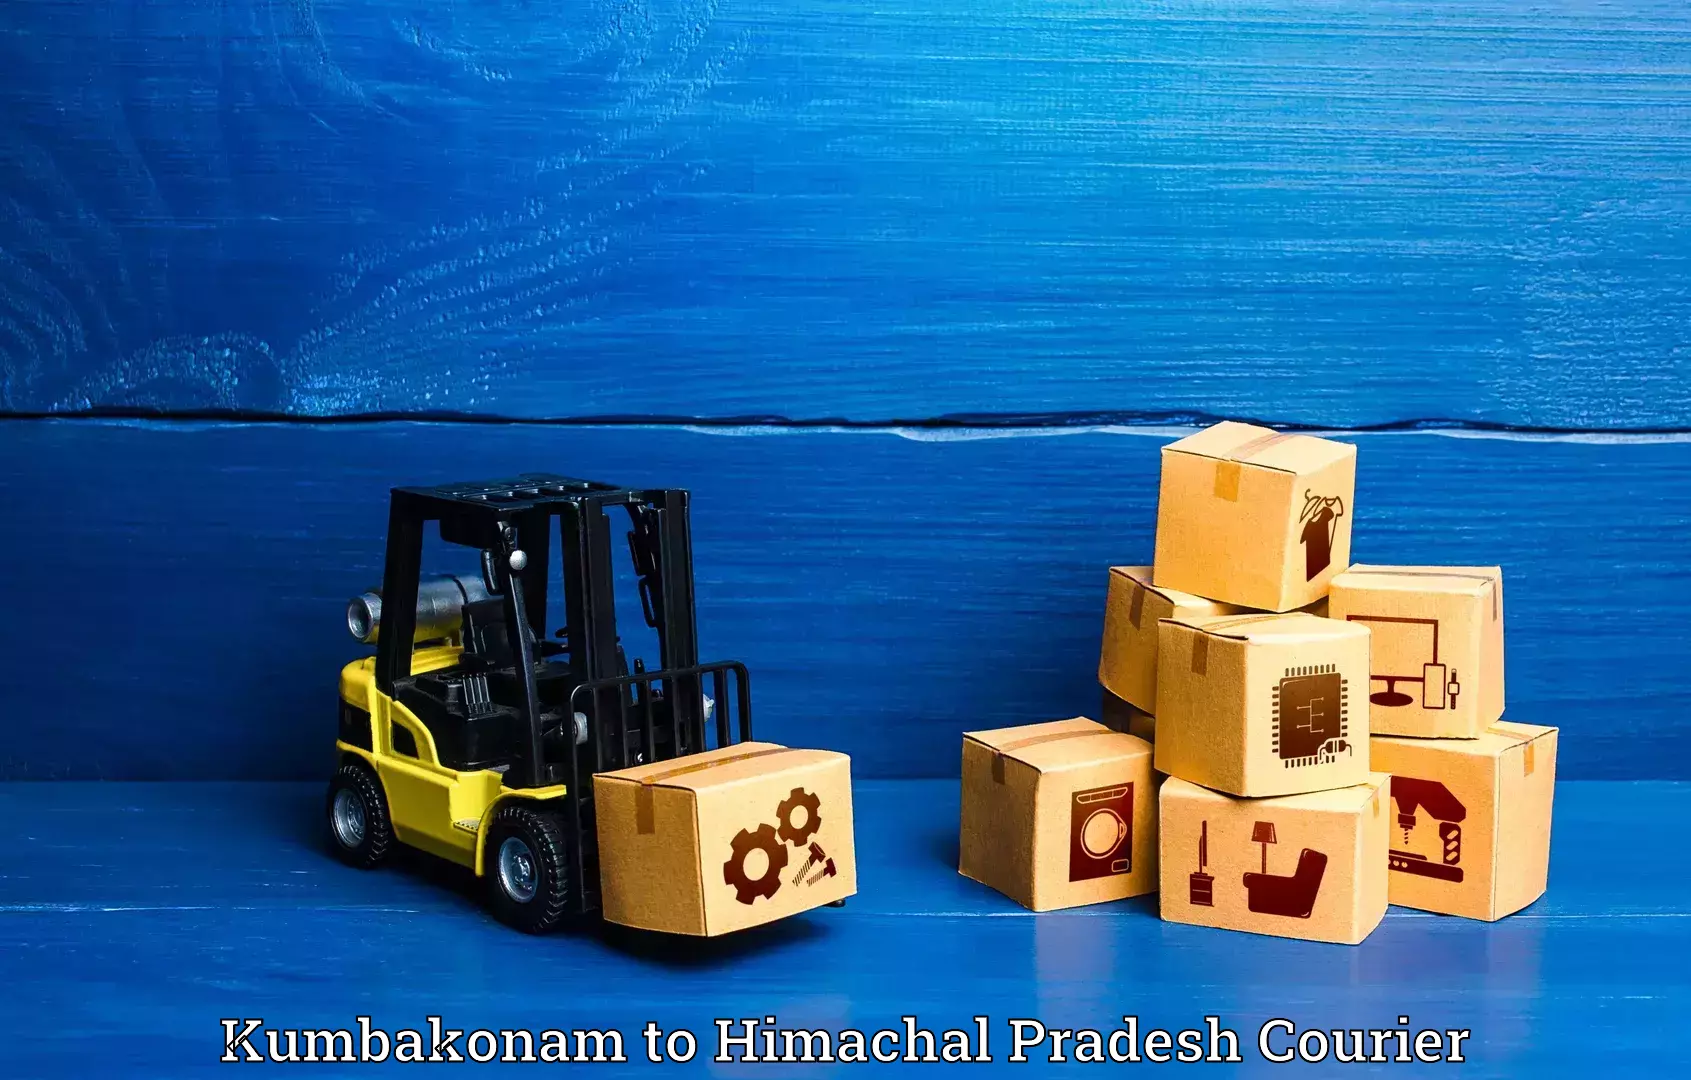 Urgent luggage shipment in Kumbakonam to Khundian